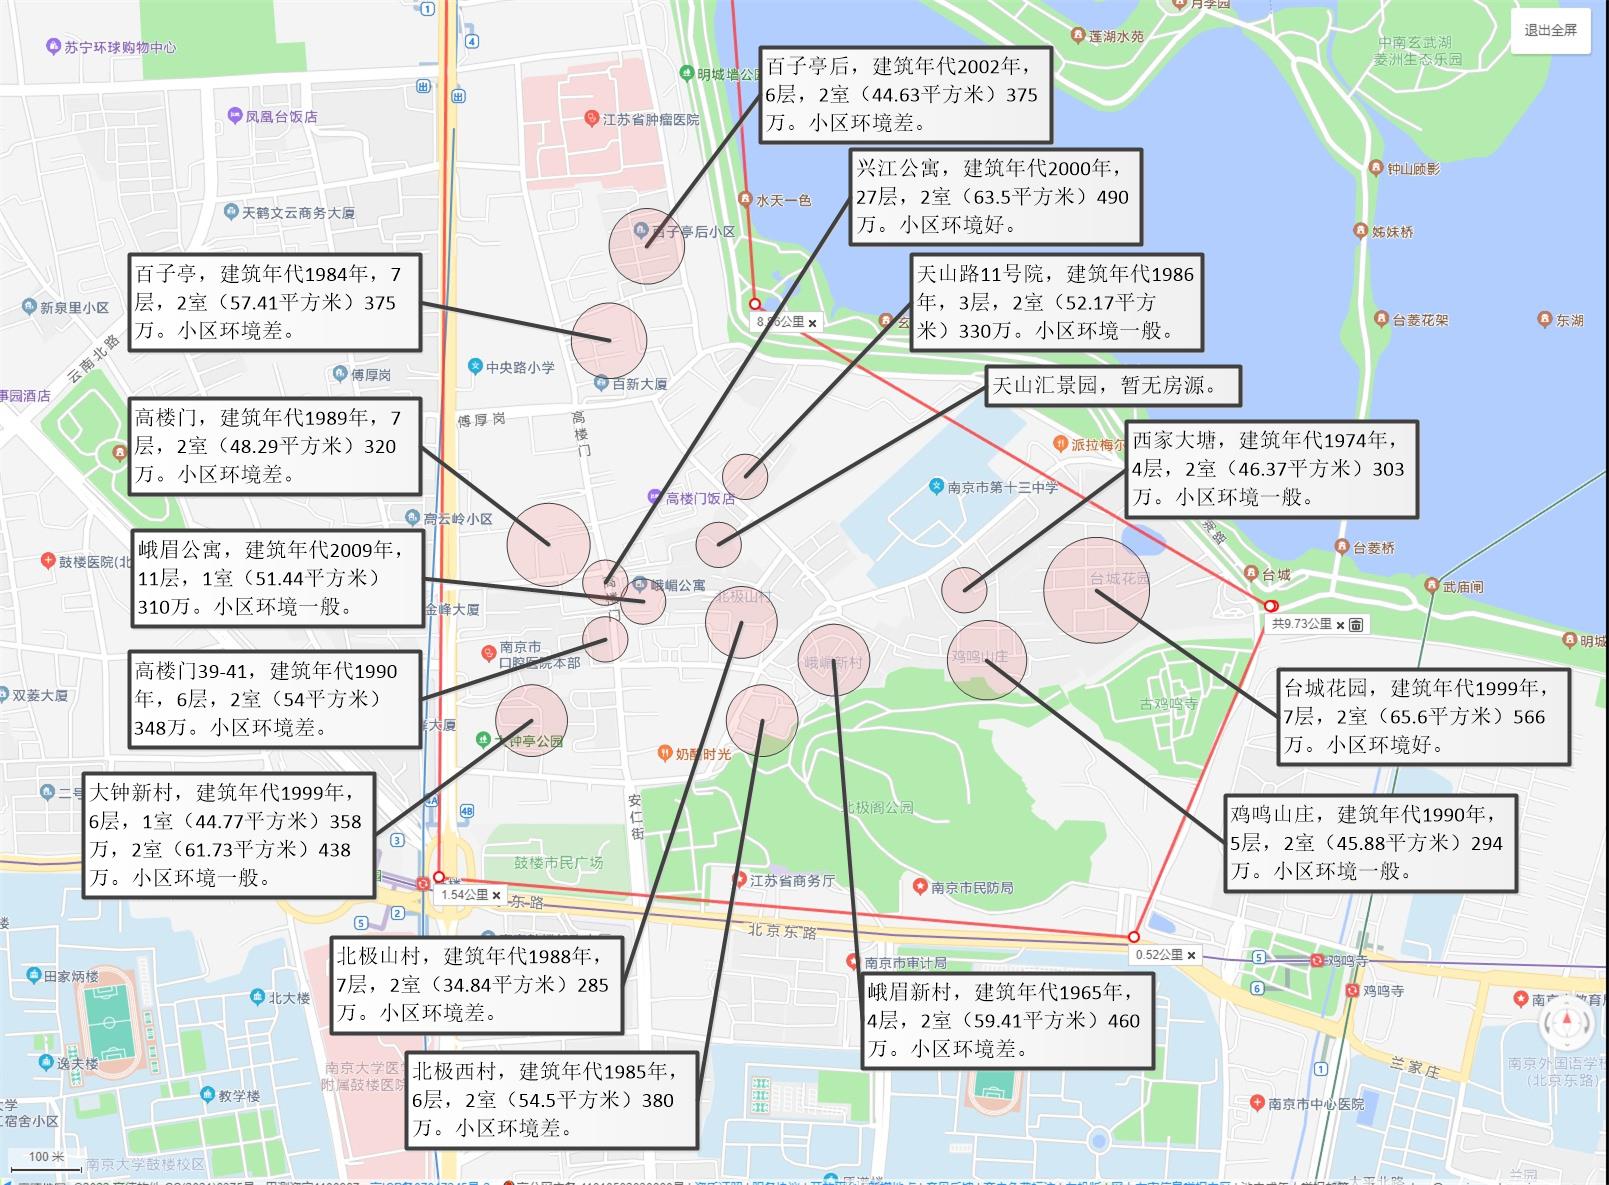 一张图了解南京科利华中学学区房分布